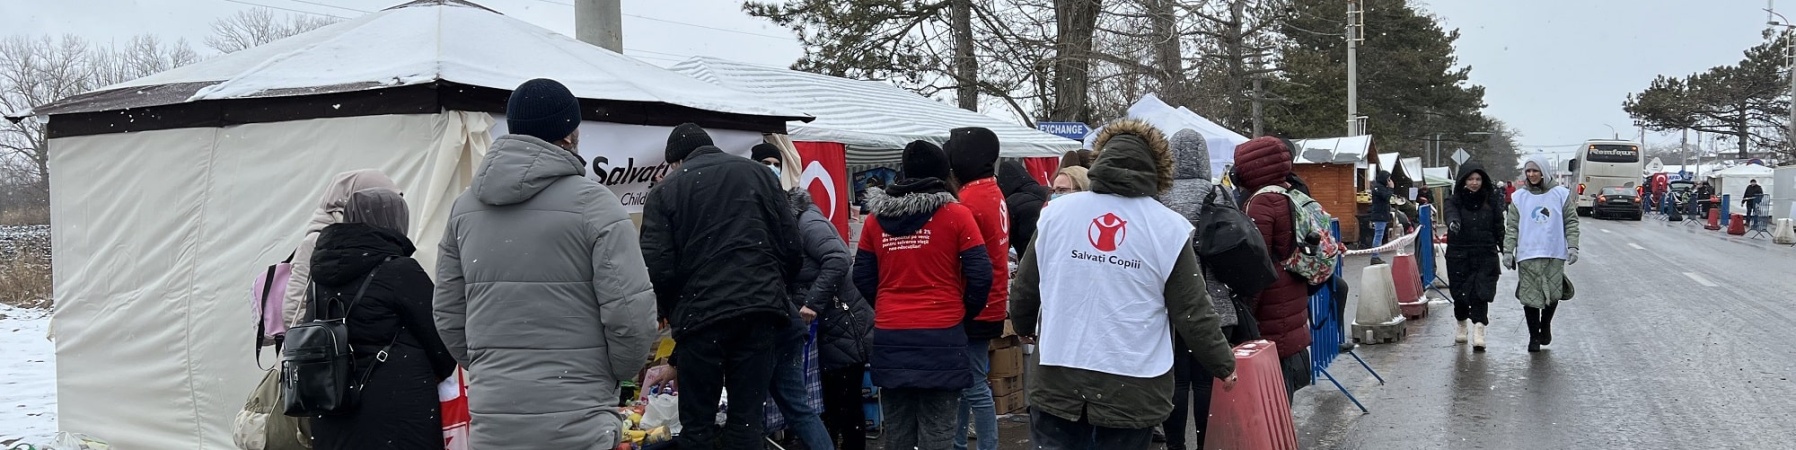 strada, neve, persone che si avvicinano a uno stand di save the children per ricevere degli aiuti